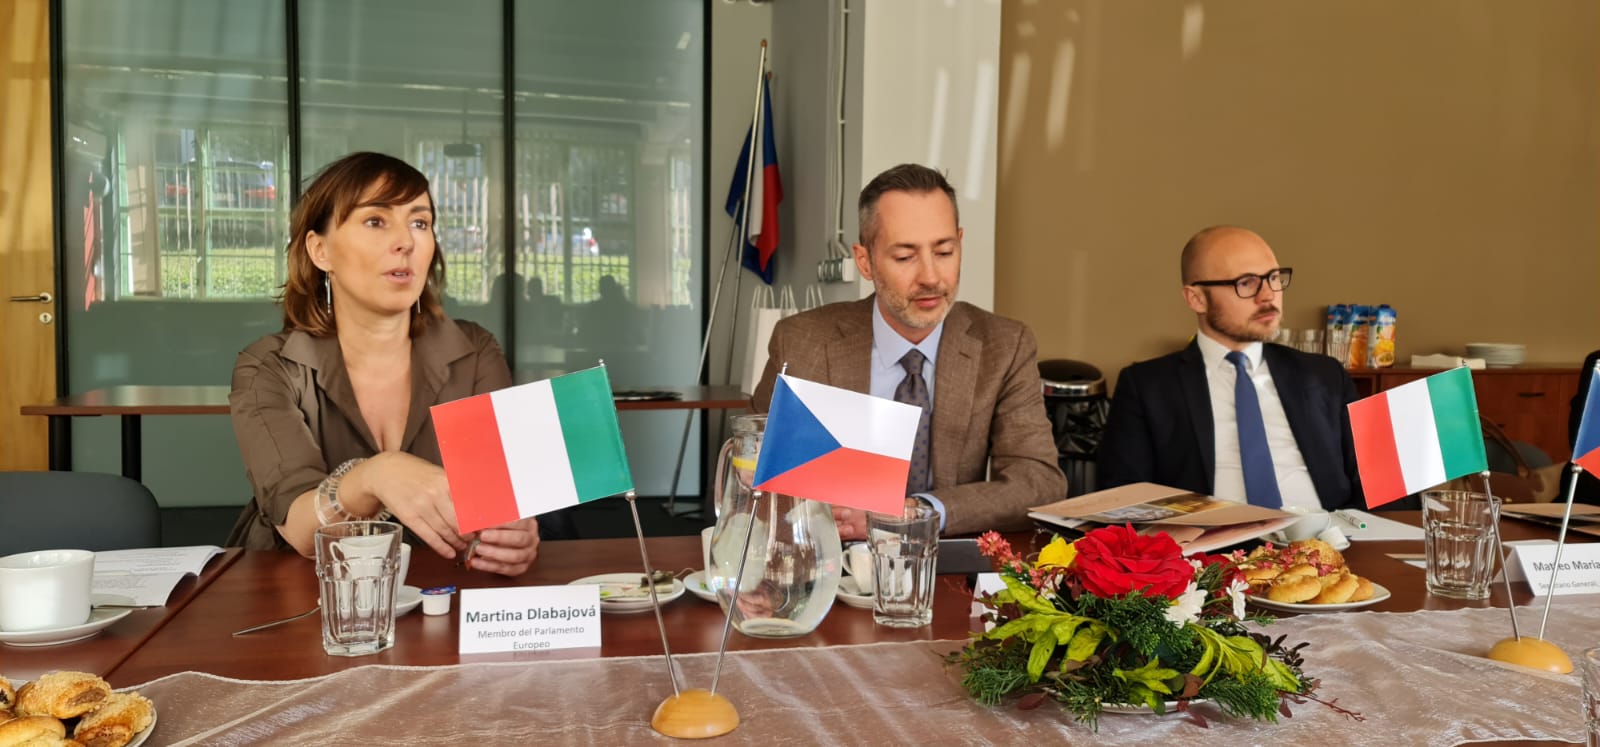 Встреча с представителями Чешско-итальянской торговой палаты